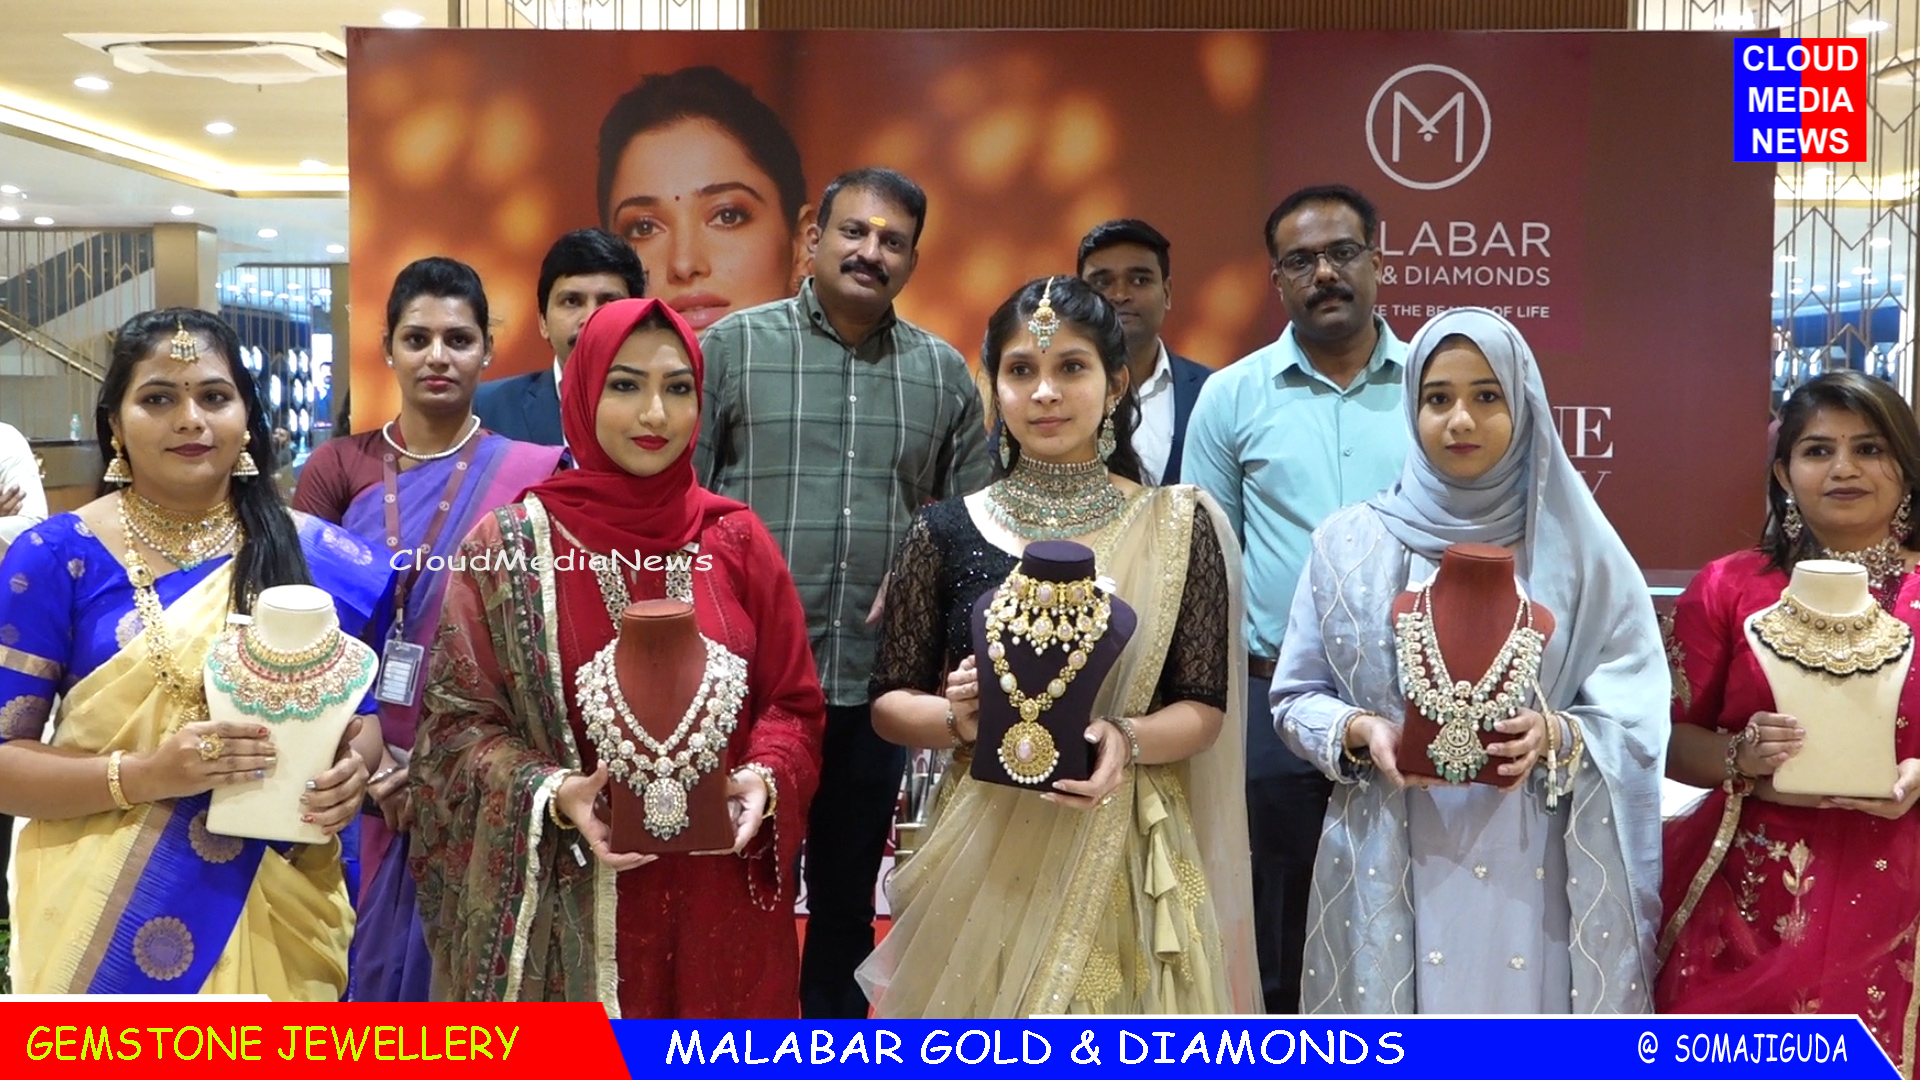 Watch Gemstone Jewellery Malabar Gold & Diamonda Somajiguda CloudMedia CloudMediaNews